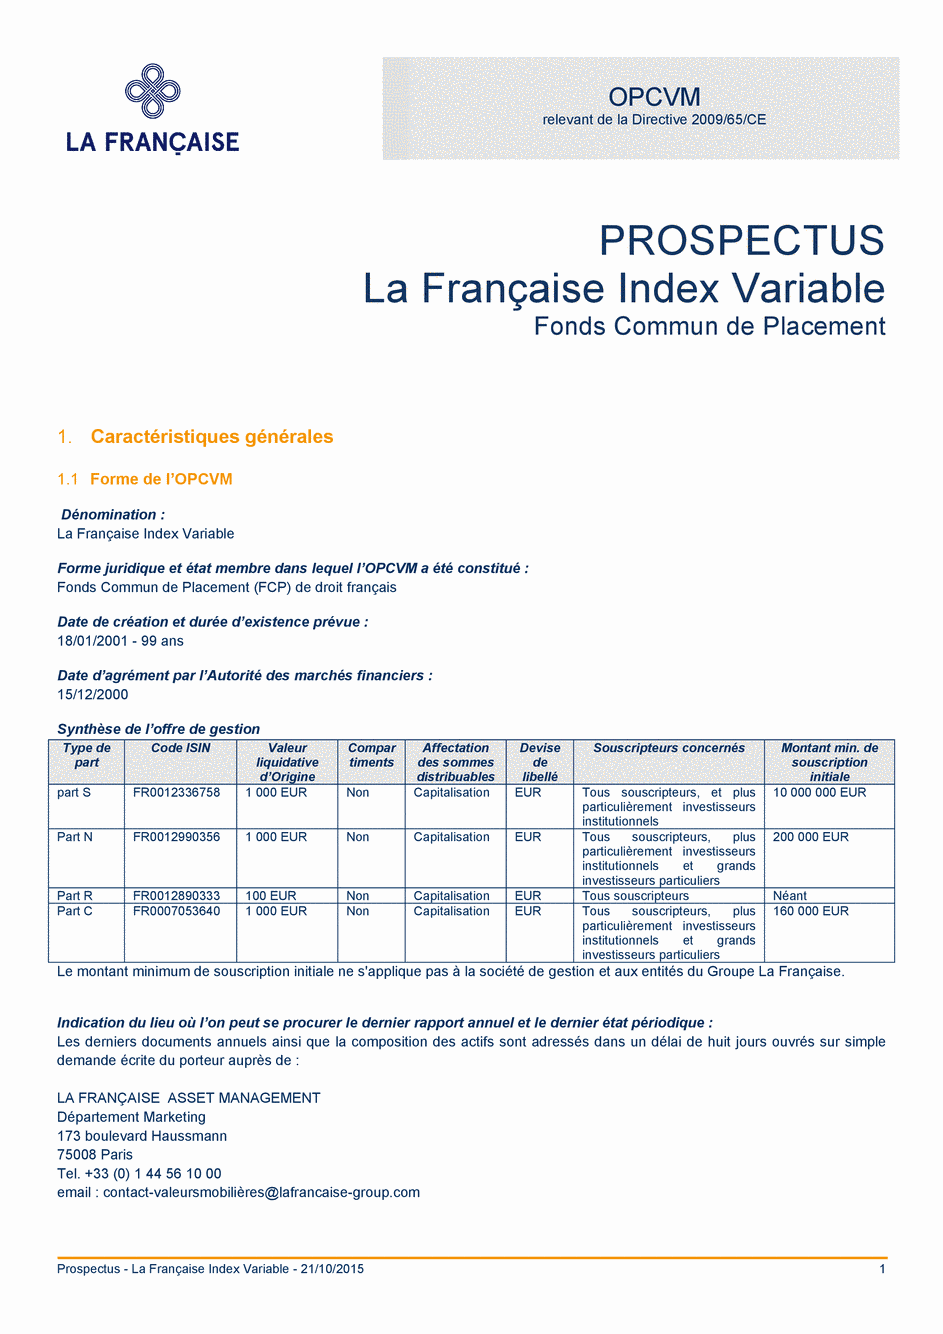 Prospectus La Française Moderate Multibonds - Part R - 21/10/2015 - Français